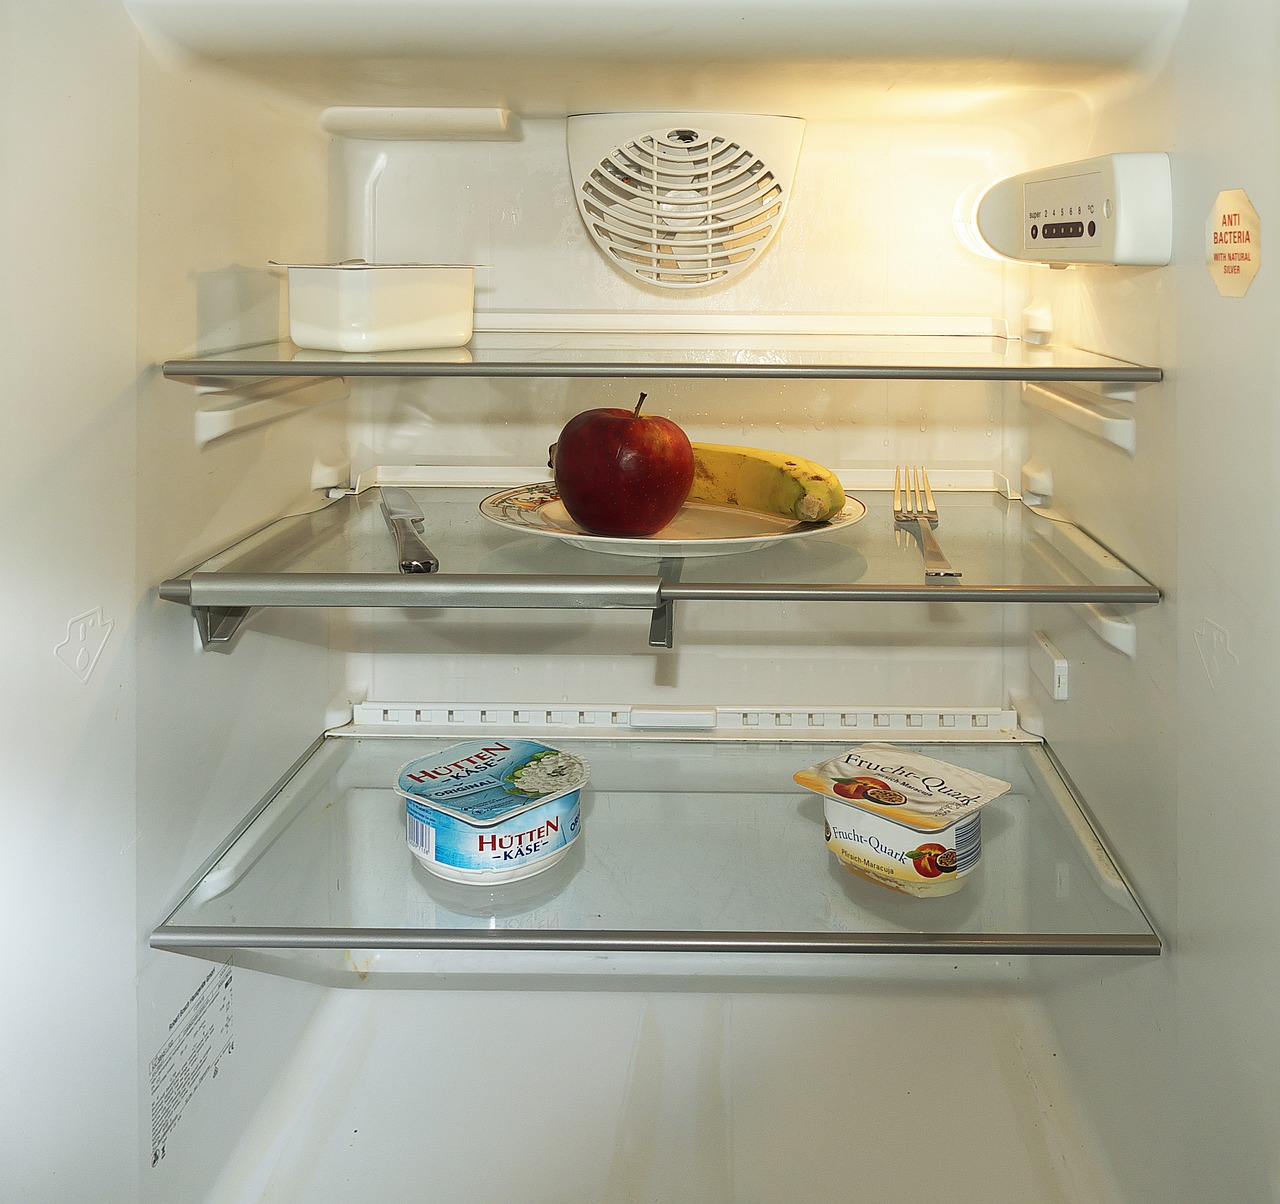 Guida: sostituire la lampadina del frigorifero